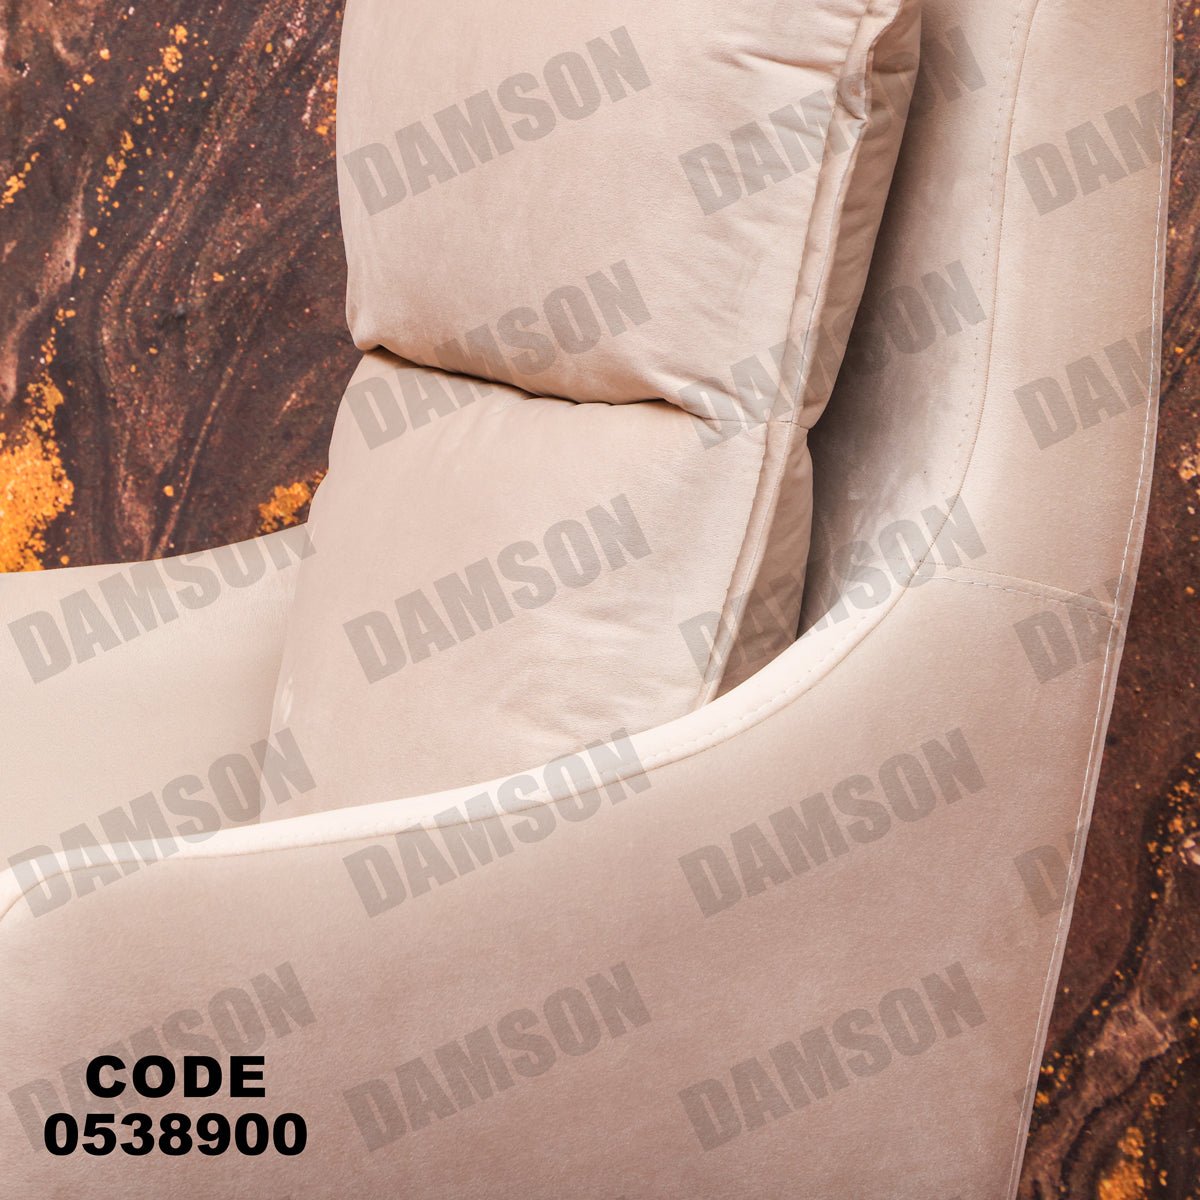 فوتية 1-389 - Damson Furnitureفوتية 1-389